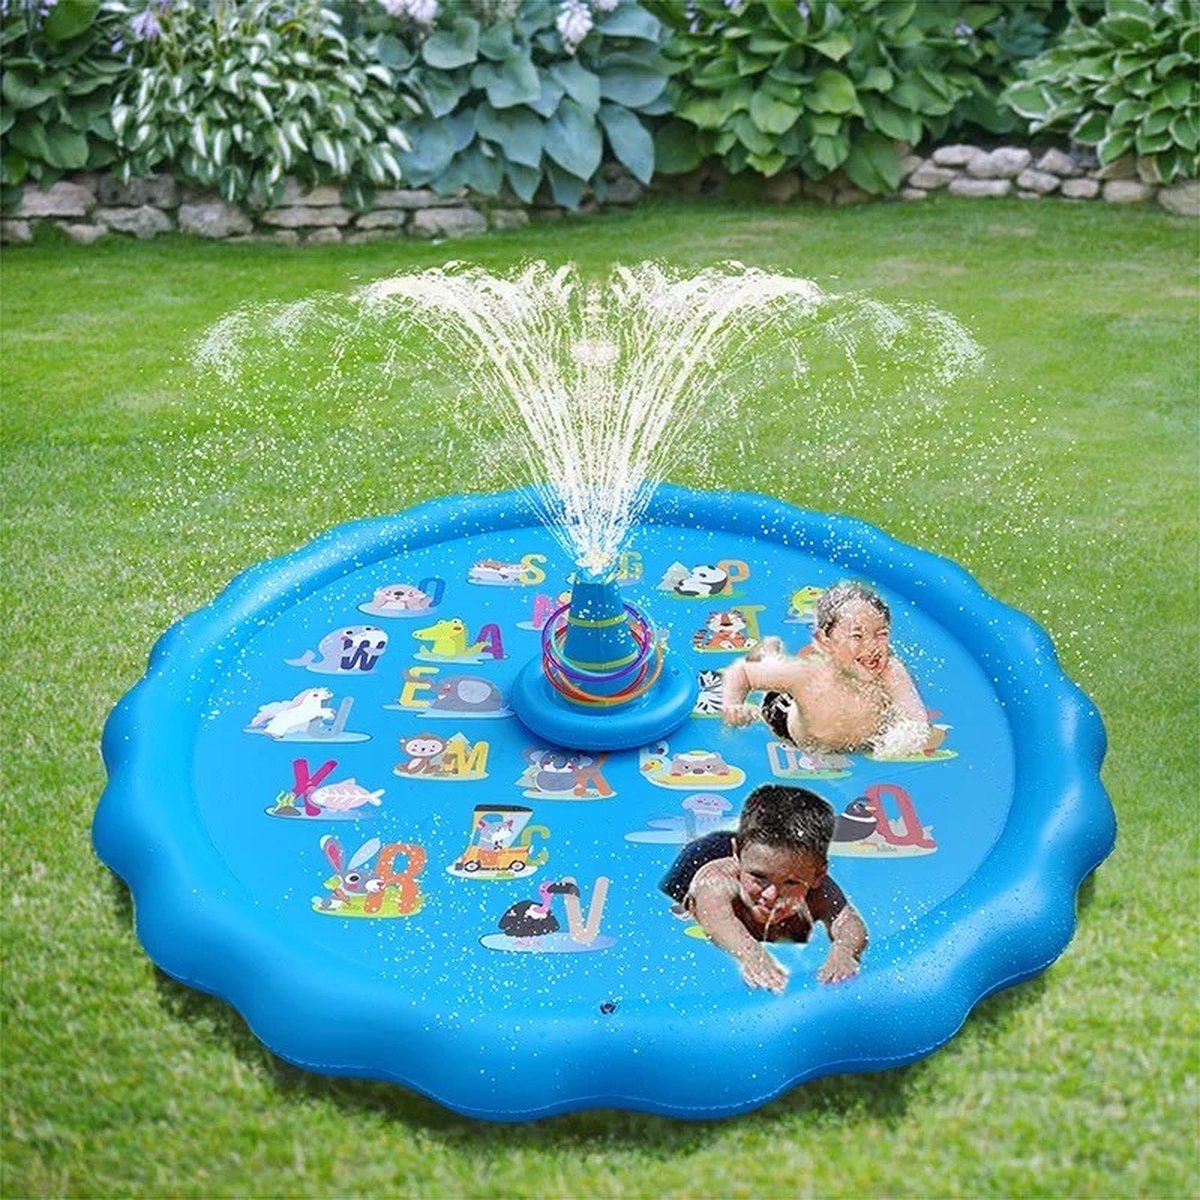 Water speelmat met ringen - Waterspeelmat 170 cm - Waterspeelgoed - Waterspel - Spelen met water - speelmat met fontein - water speelmat